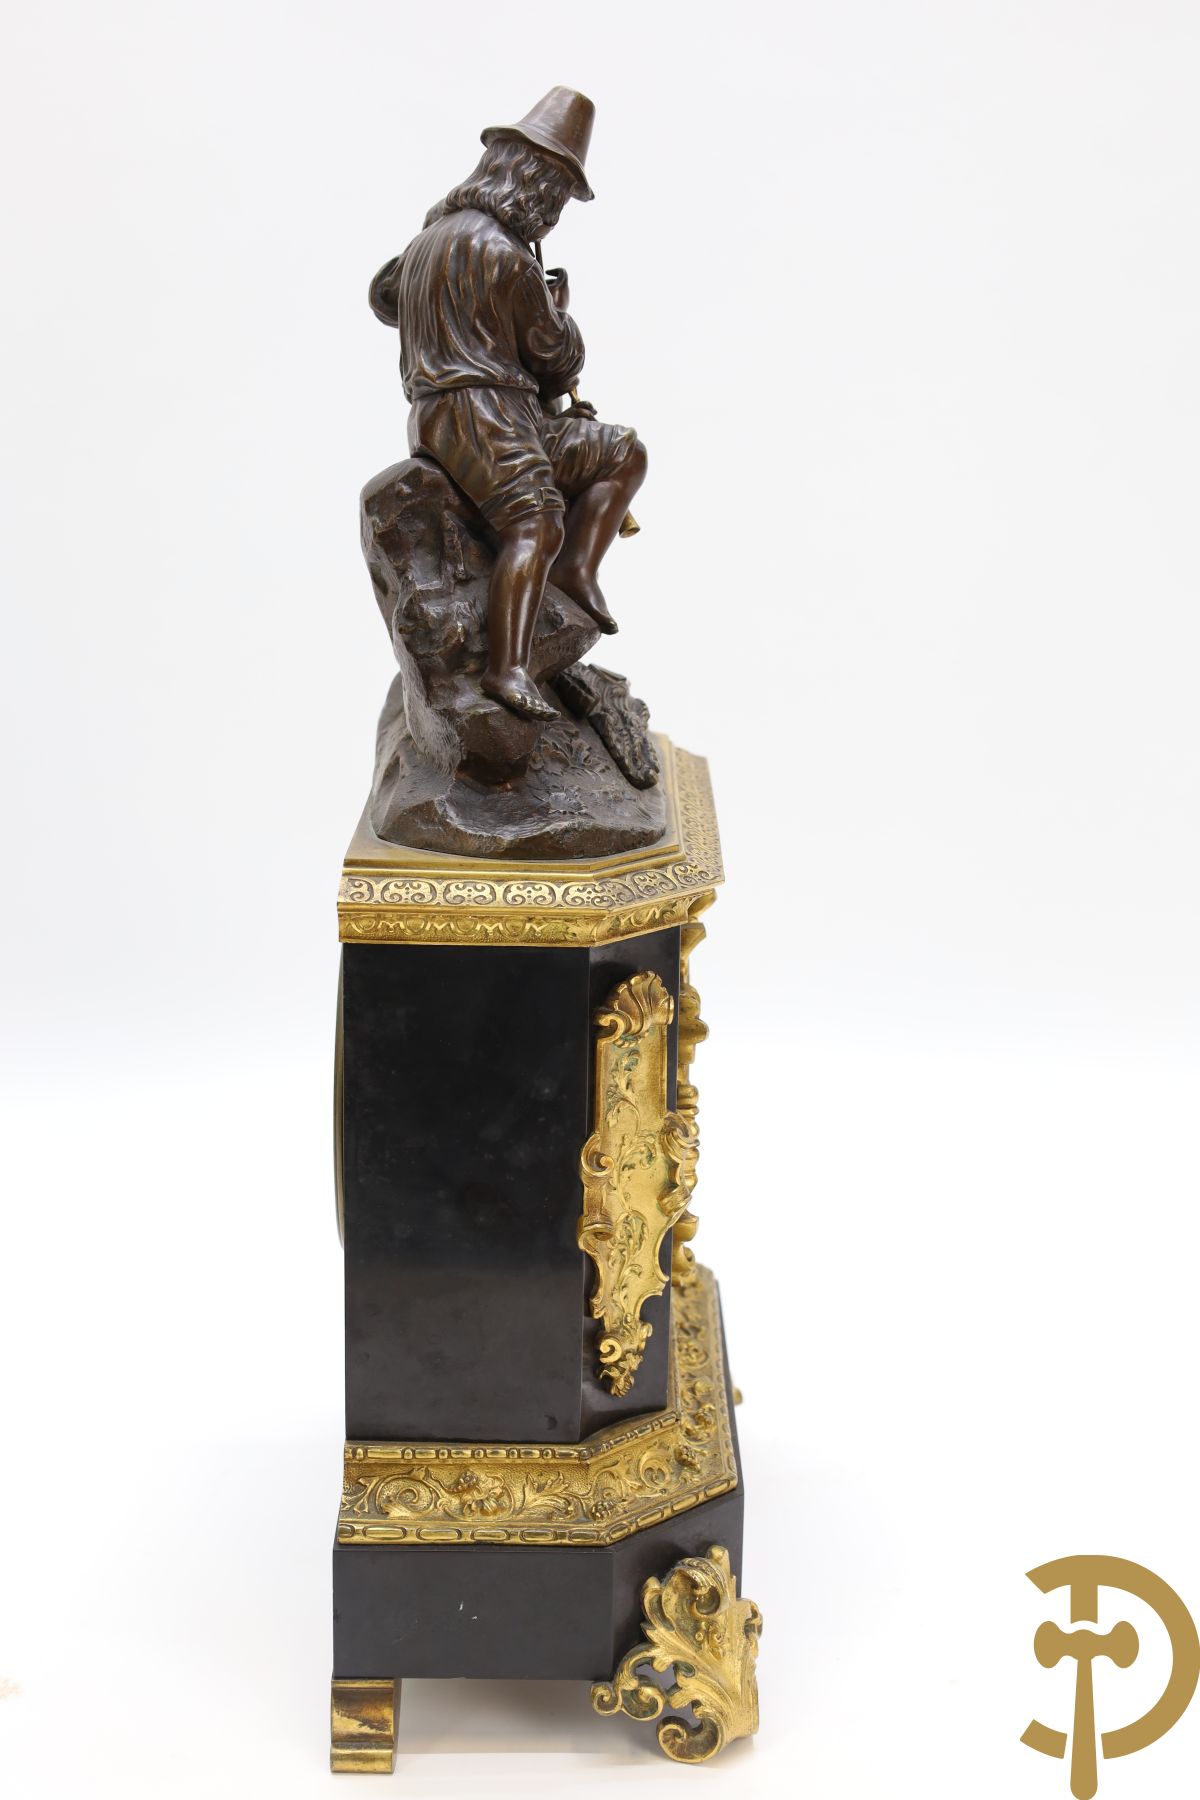 Zwart marmeren Napoleon III pendule bekroond met doedelzakspelers, Cotiny F. de bronzes à Bruxelles getekend